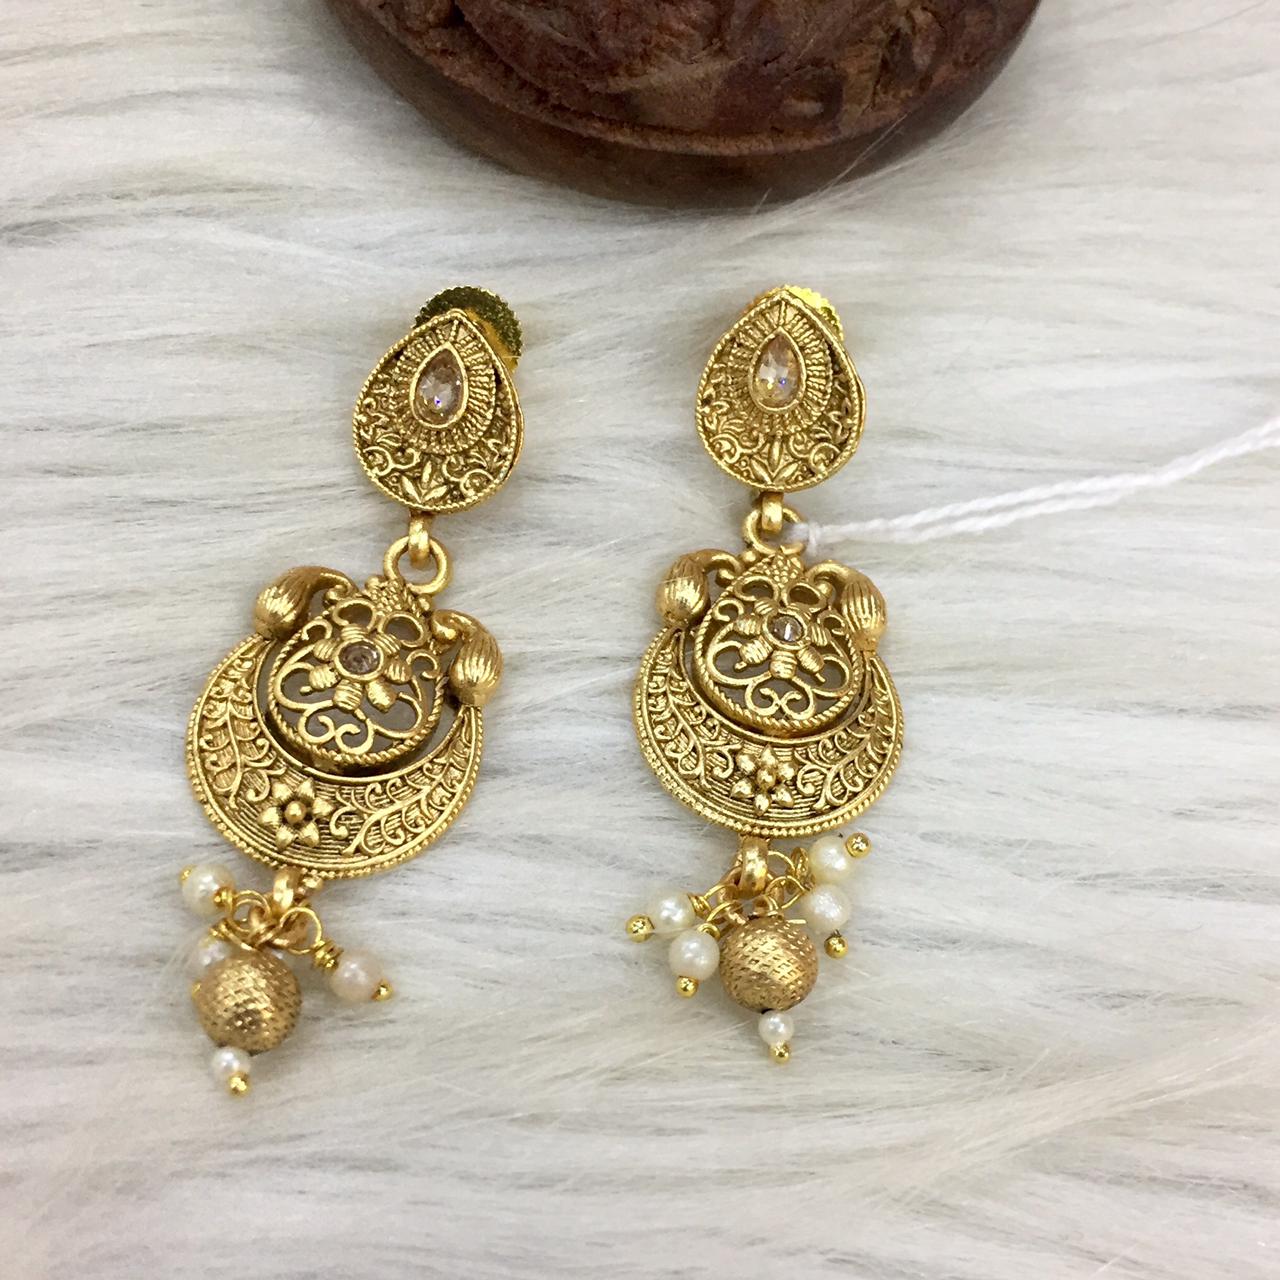 Antique earrings 357809